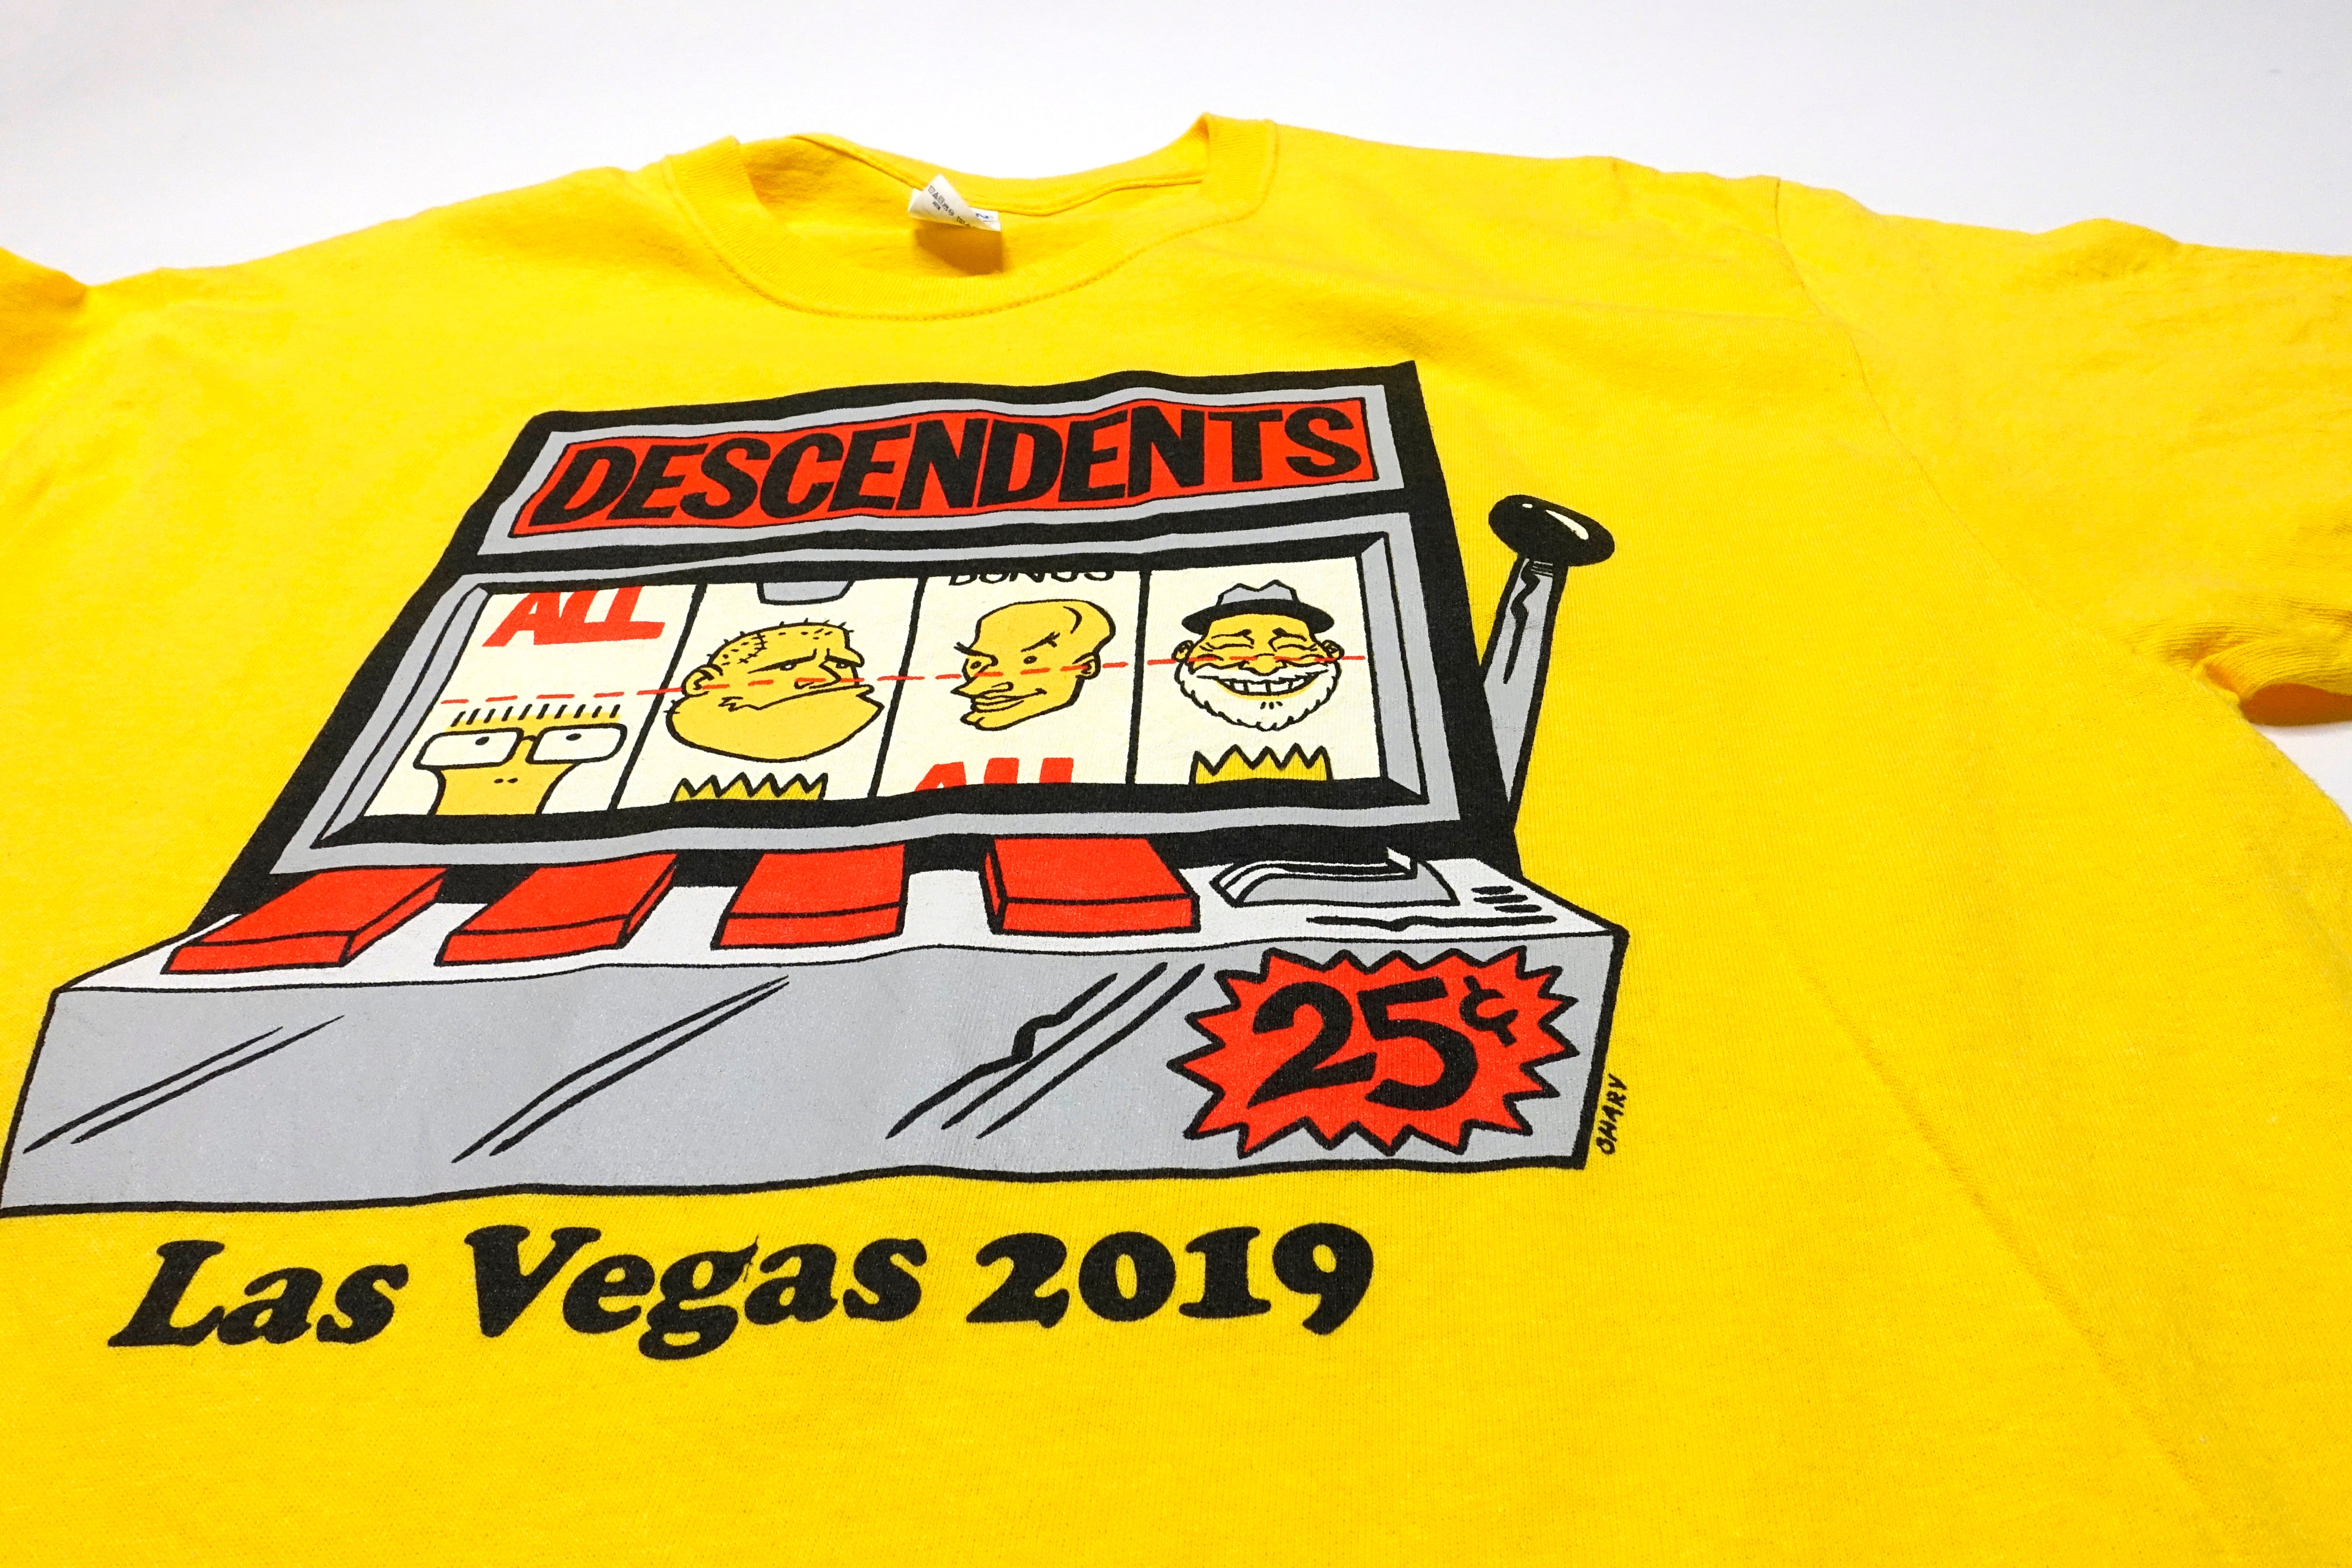 Descendents - Las Vegas Punk Rock Bowling 2019 Tour Shirt Size Large